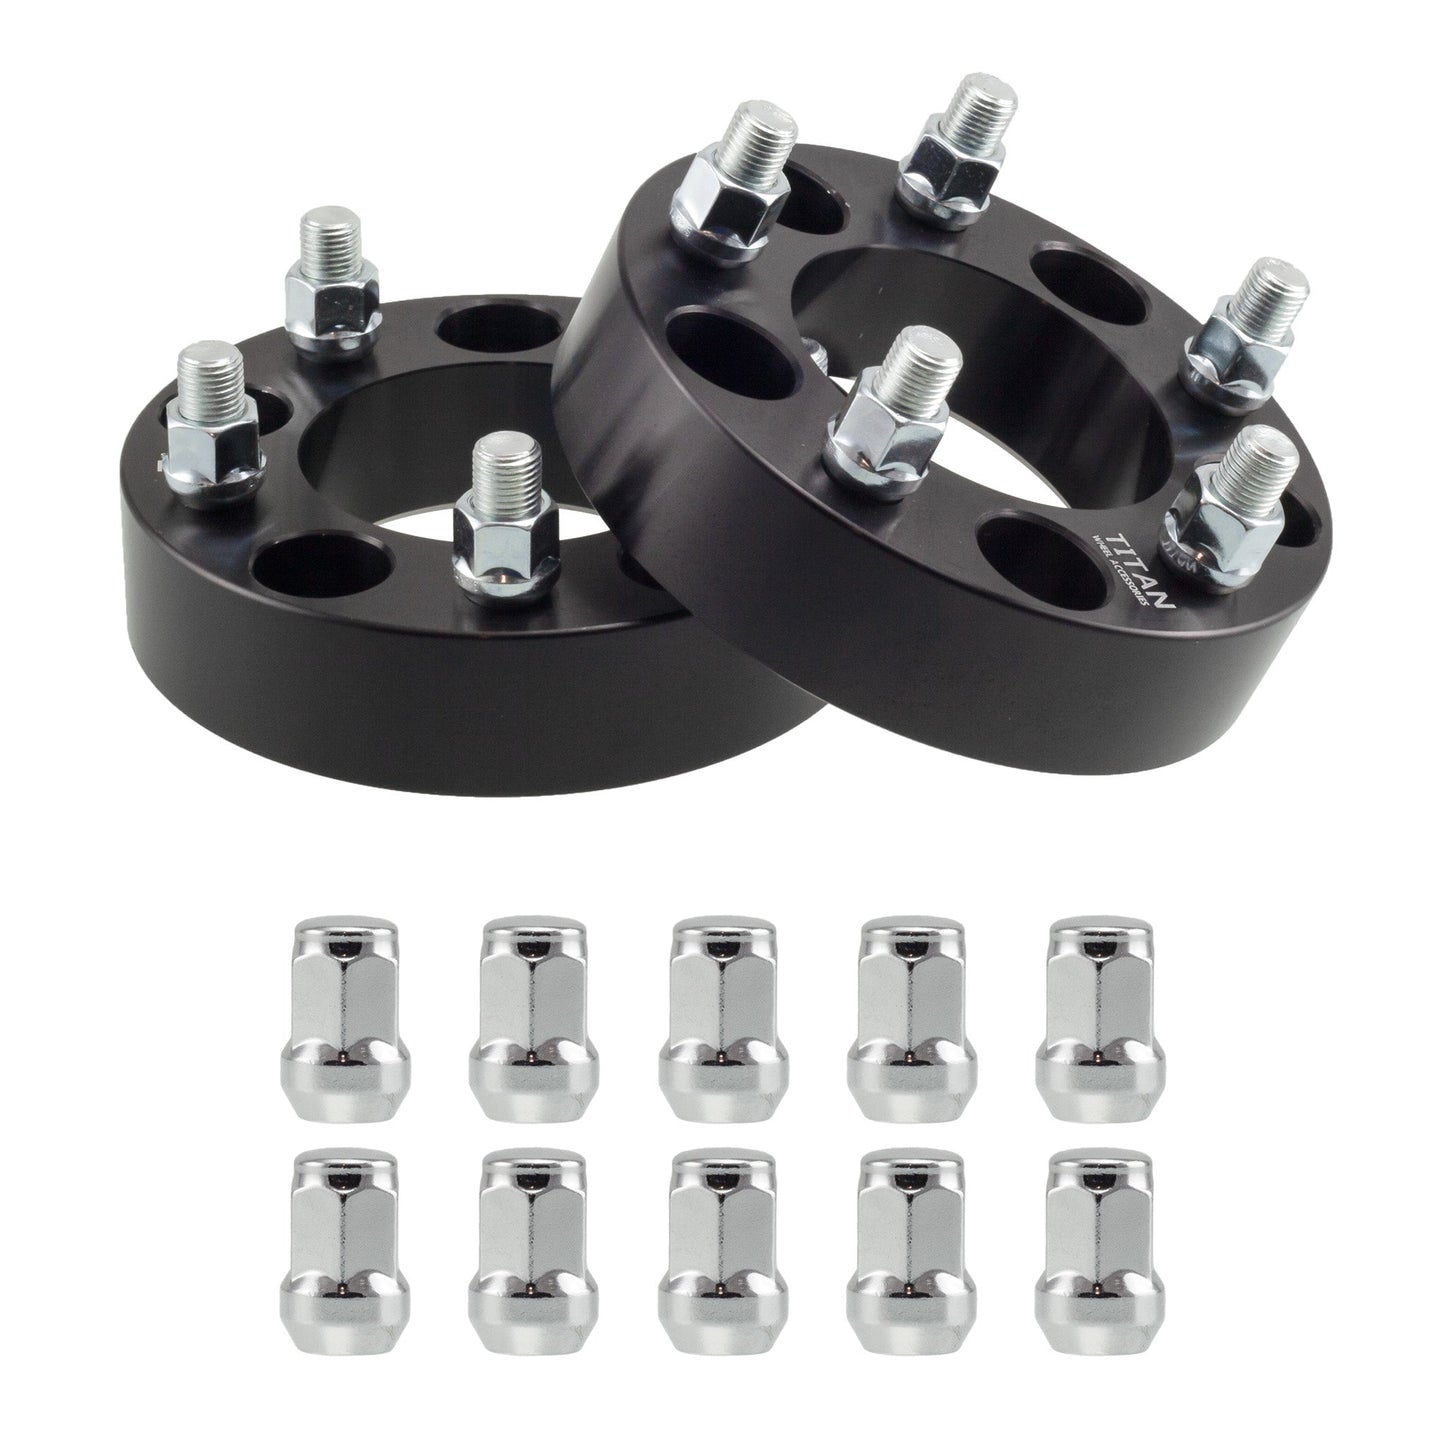 25mm (1") Titan Wheel Spacers for VW Golf Jetta Audi TT | 5x100 | 57.1 Hubcentric | 12x1.5 Studs | Titan Wheel Accessories